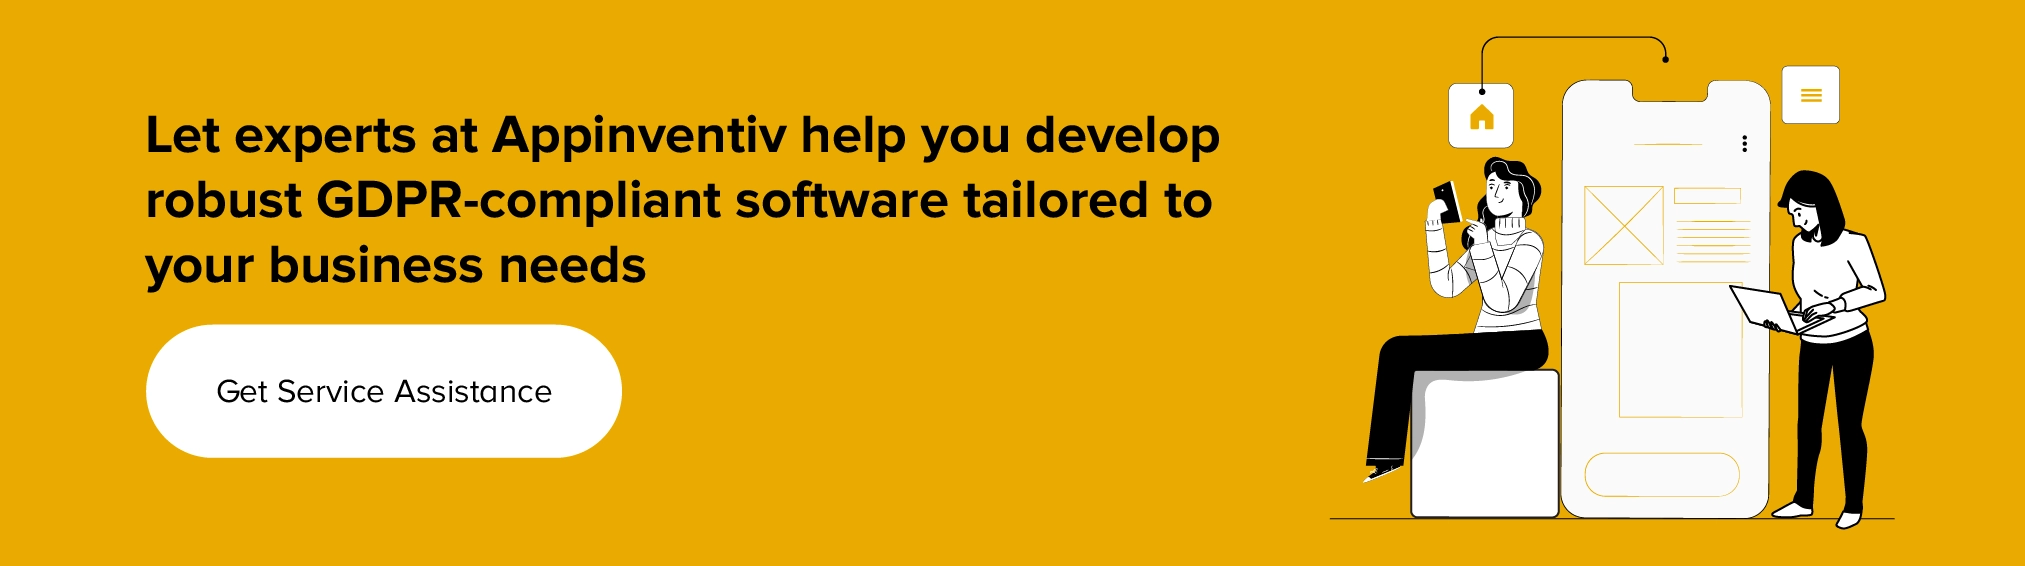 Получите сервисную помощь для разработки программного обеспечения, соответствующего требованиям GDPR